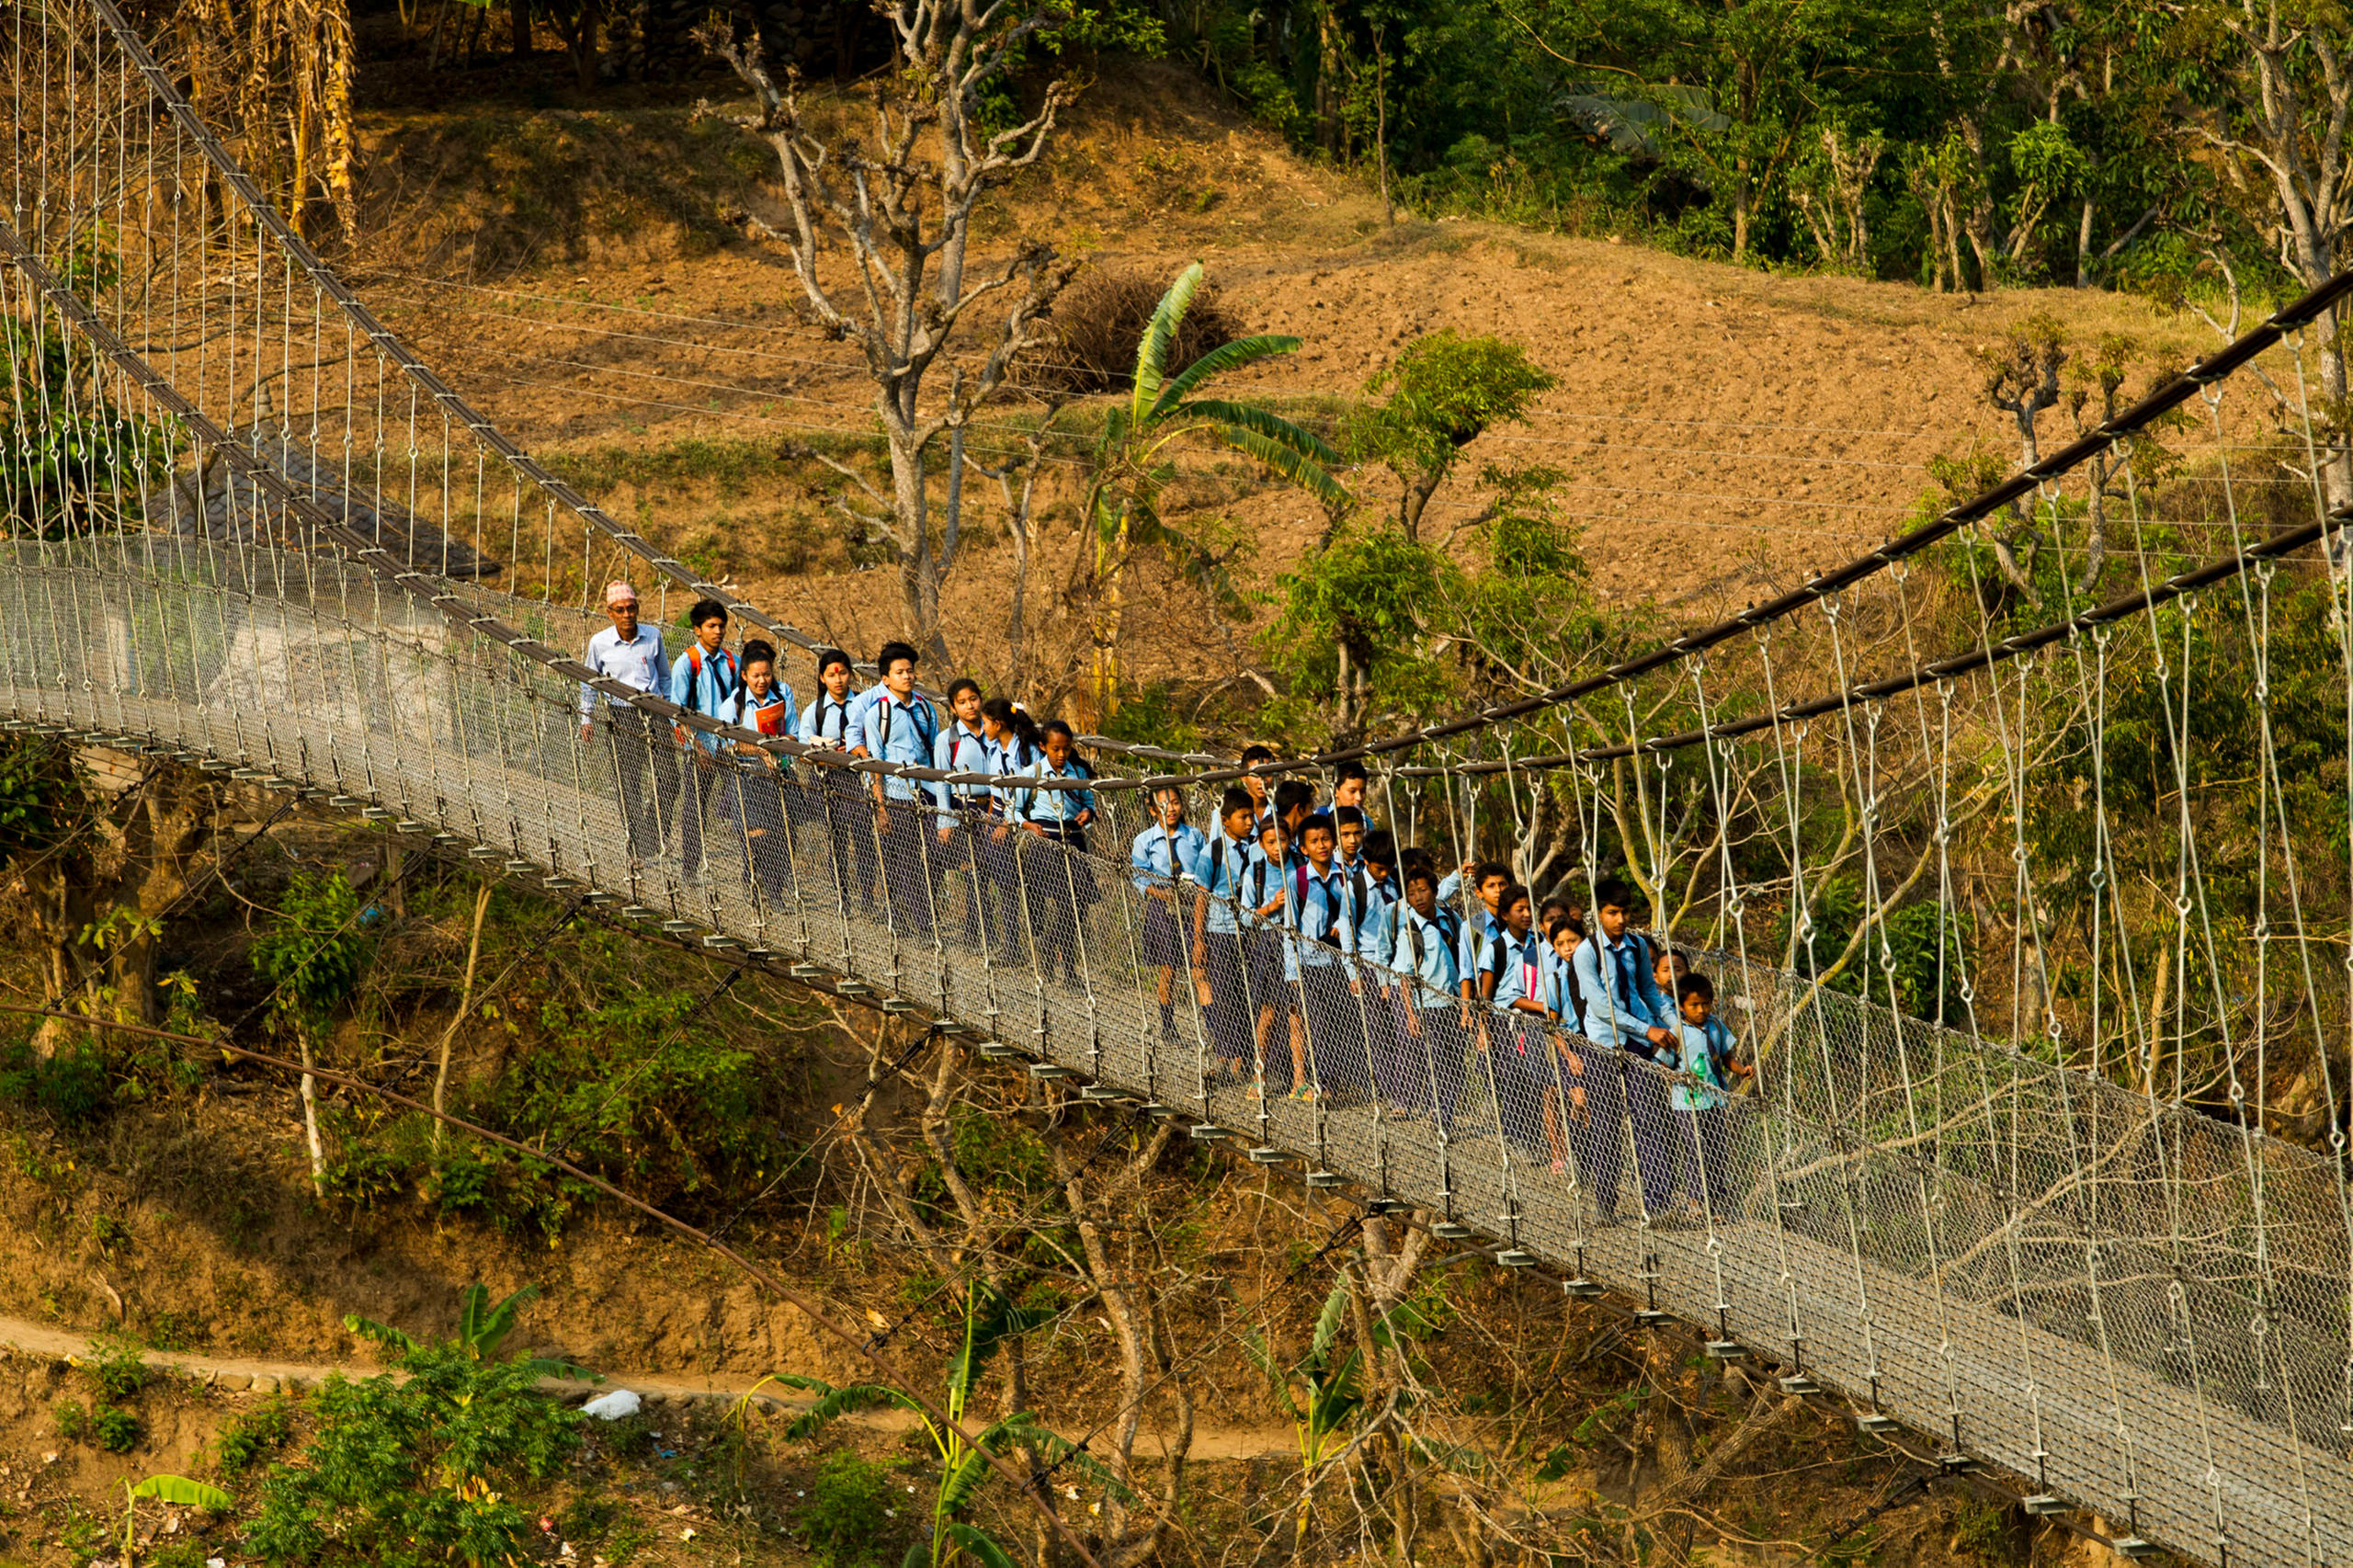 Schulkinder in Uniform auf einer Hängebrücke in Nepal